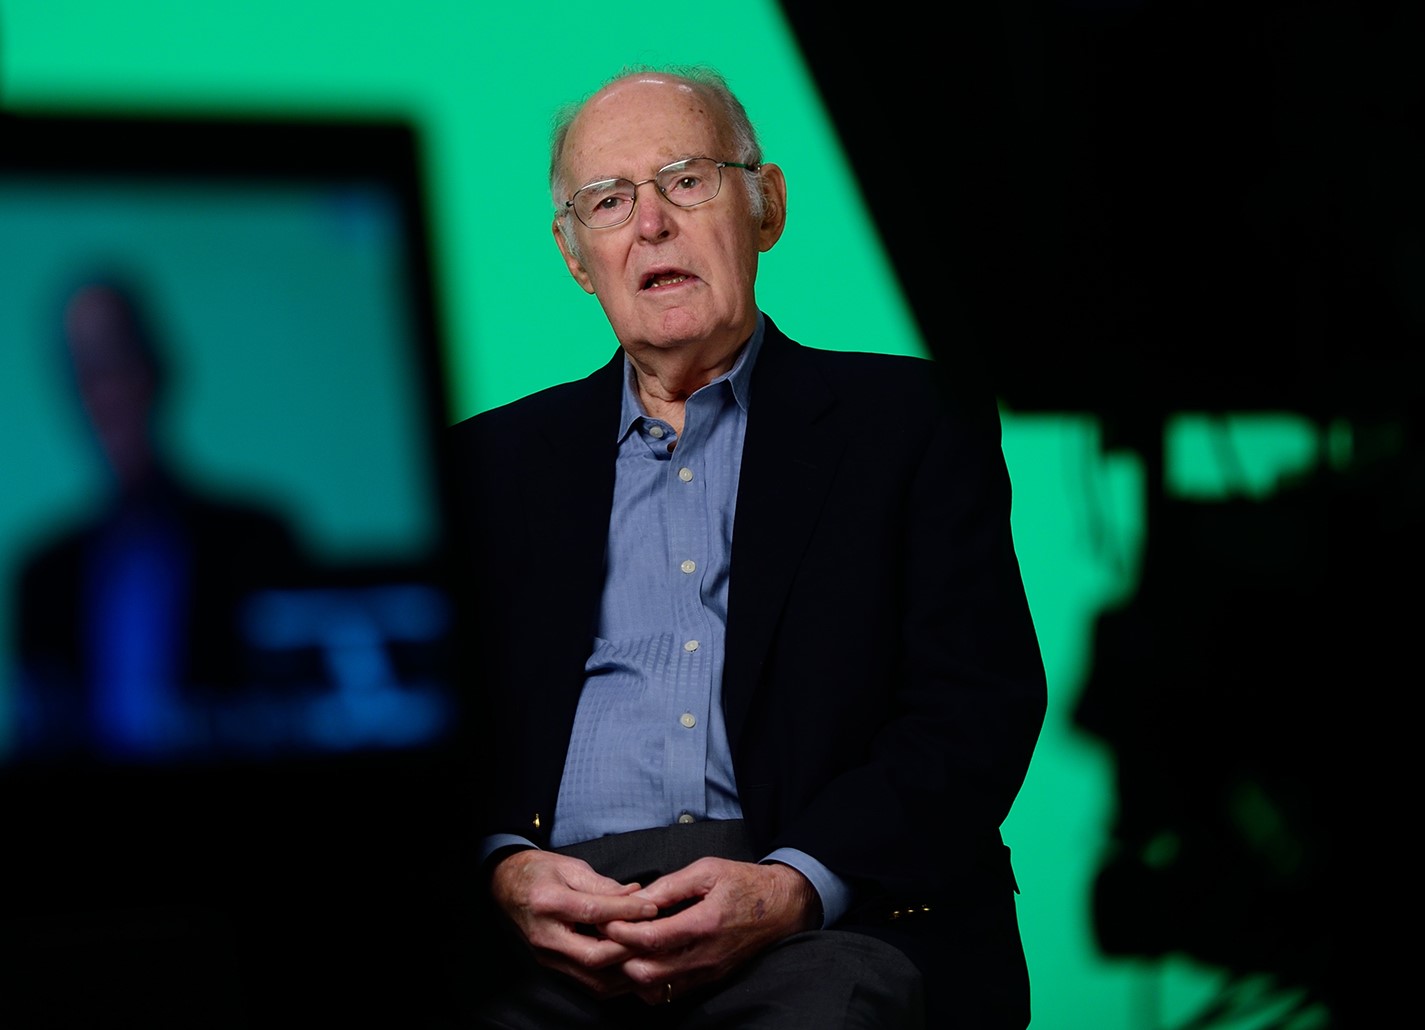 インテルの共同創業者であり、チップ業界のレジェンドであるゴードン・ムーア氏が 94 歳で死去